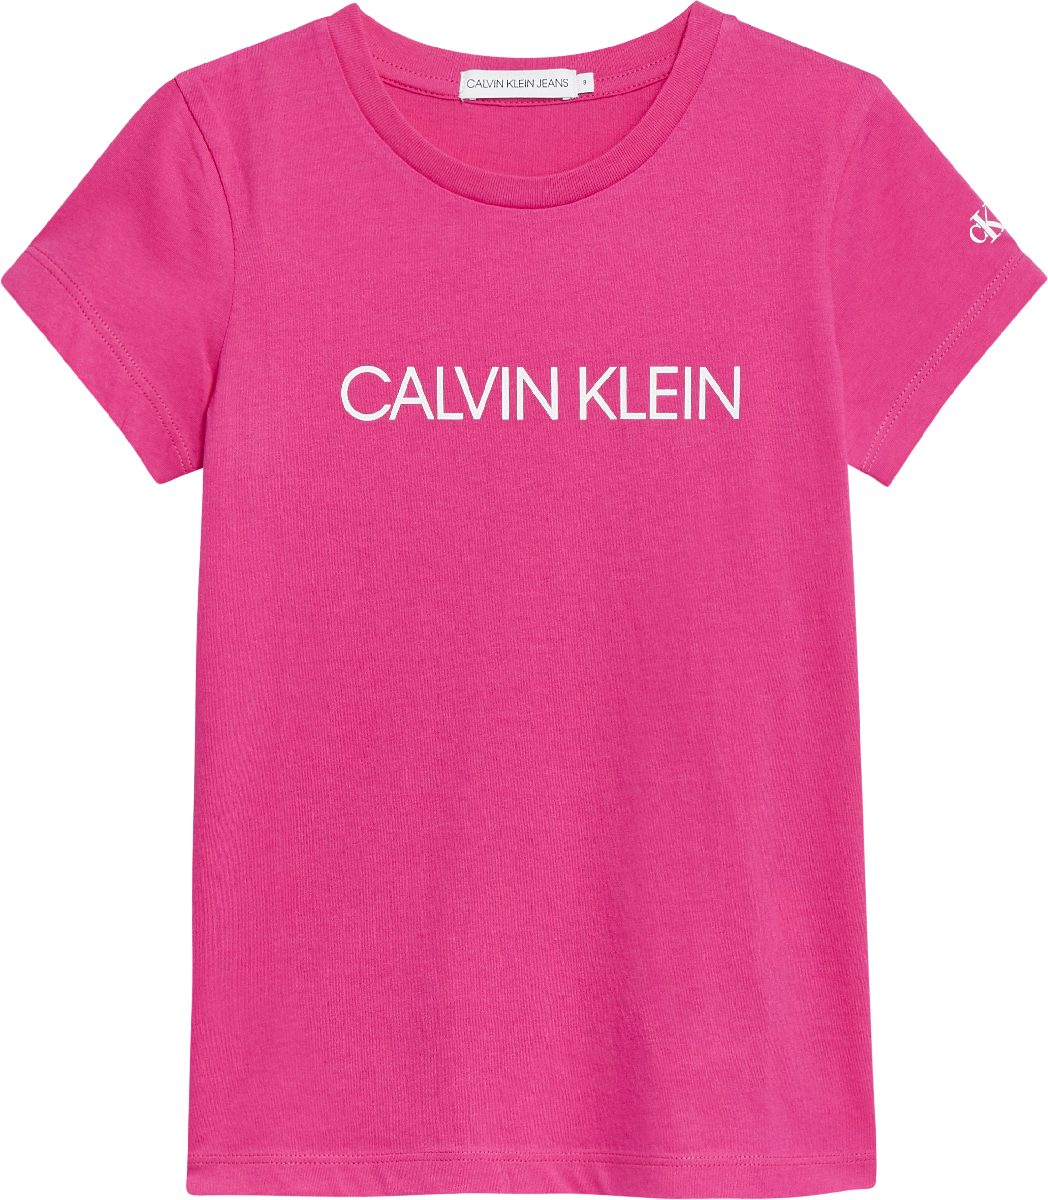 Meisjes INSTITUTIONAL SLIM T-SHIRT van Calvin Klein in de kleur Hot Magenta in maat 176.